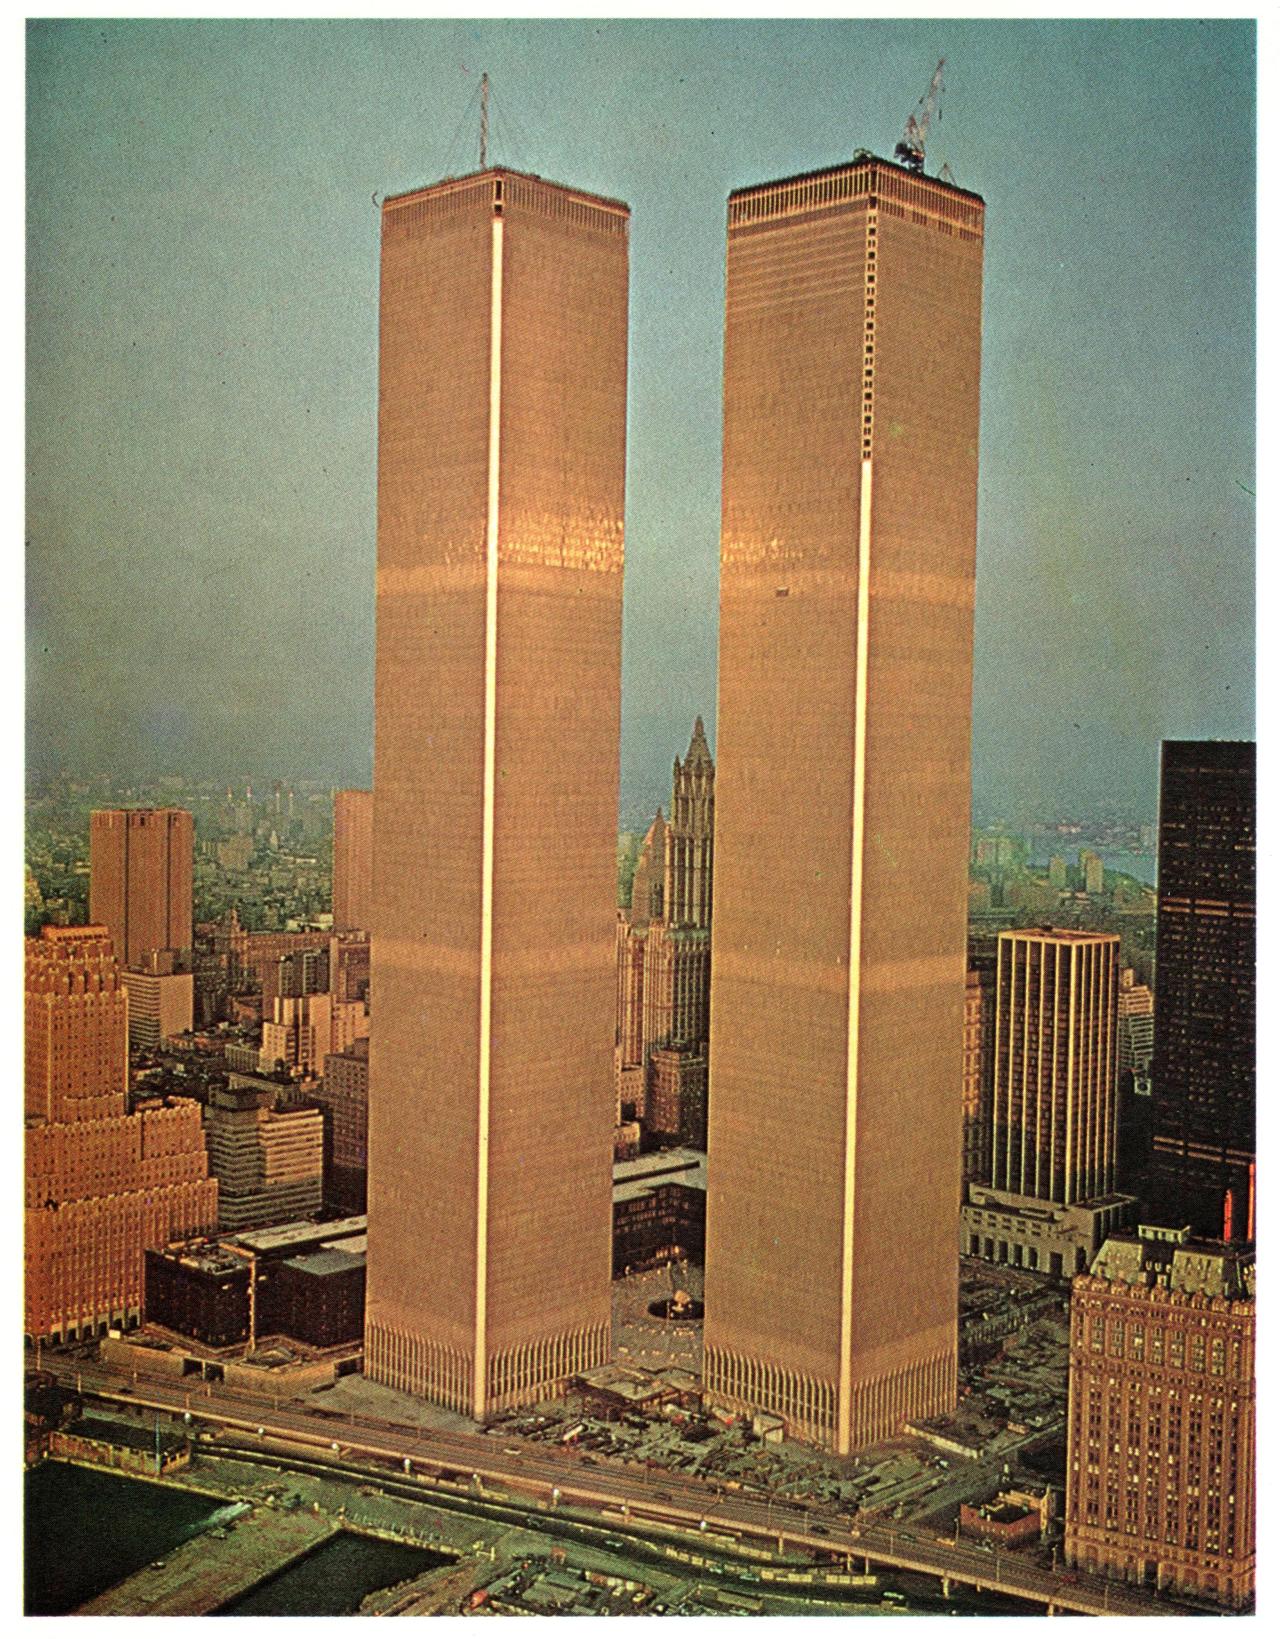 Близнецы сколько этажей. Минору Ямасаки. Всемирный торговый центр в Нью-Йорке. ВТЦ Нью-Йорк башни Близнецы. Всемирный торговый центр - т Минору Ямасаки, 1973 года в Нью-Йорке.. Башни ВТЦ В Нью-Йорке внутри.